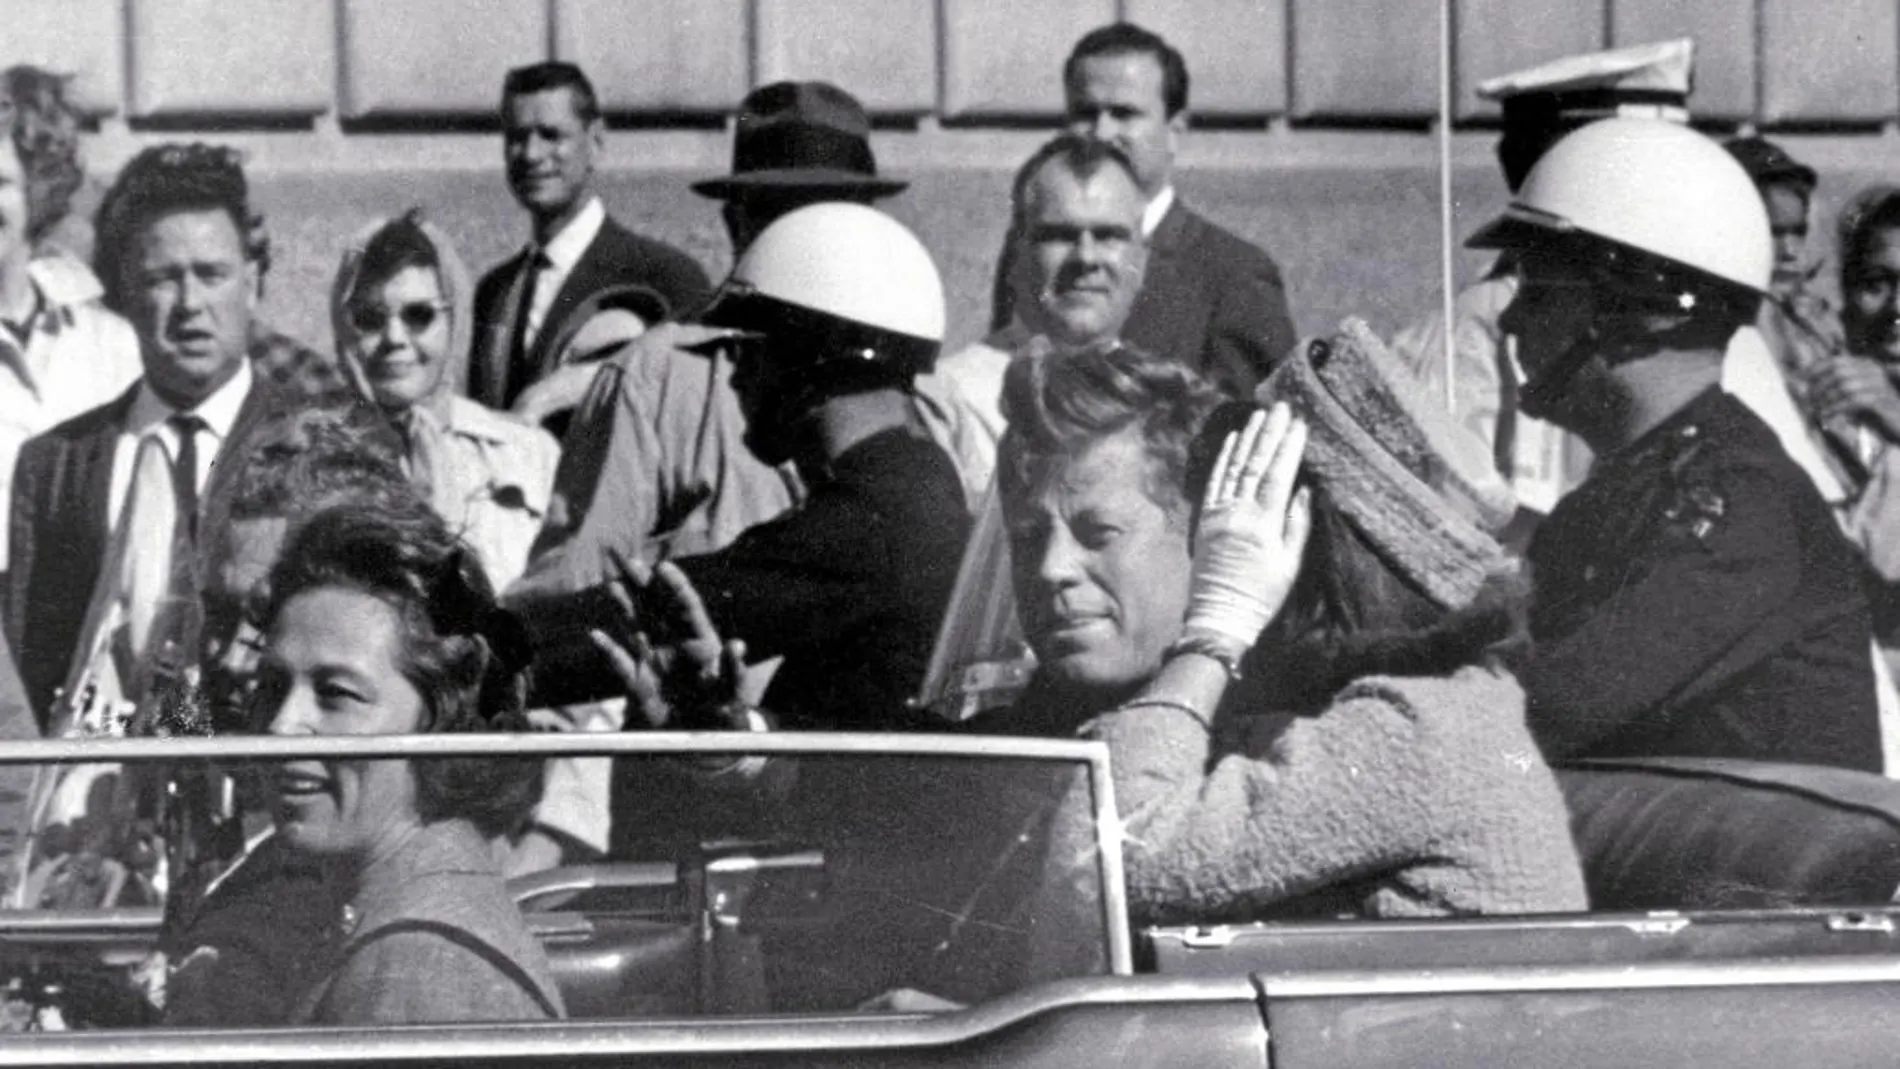 Una imagen de la caravana presidencial en Dallas, el 22 de noviembre de 1963, pocos momentos antes de que Kennedy fuera asesinado